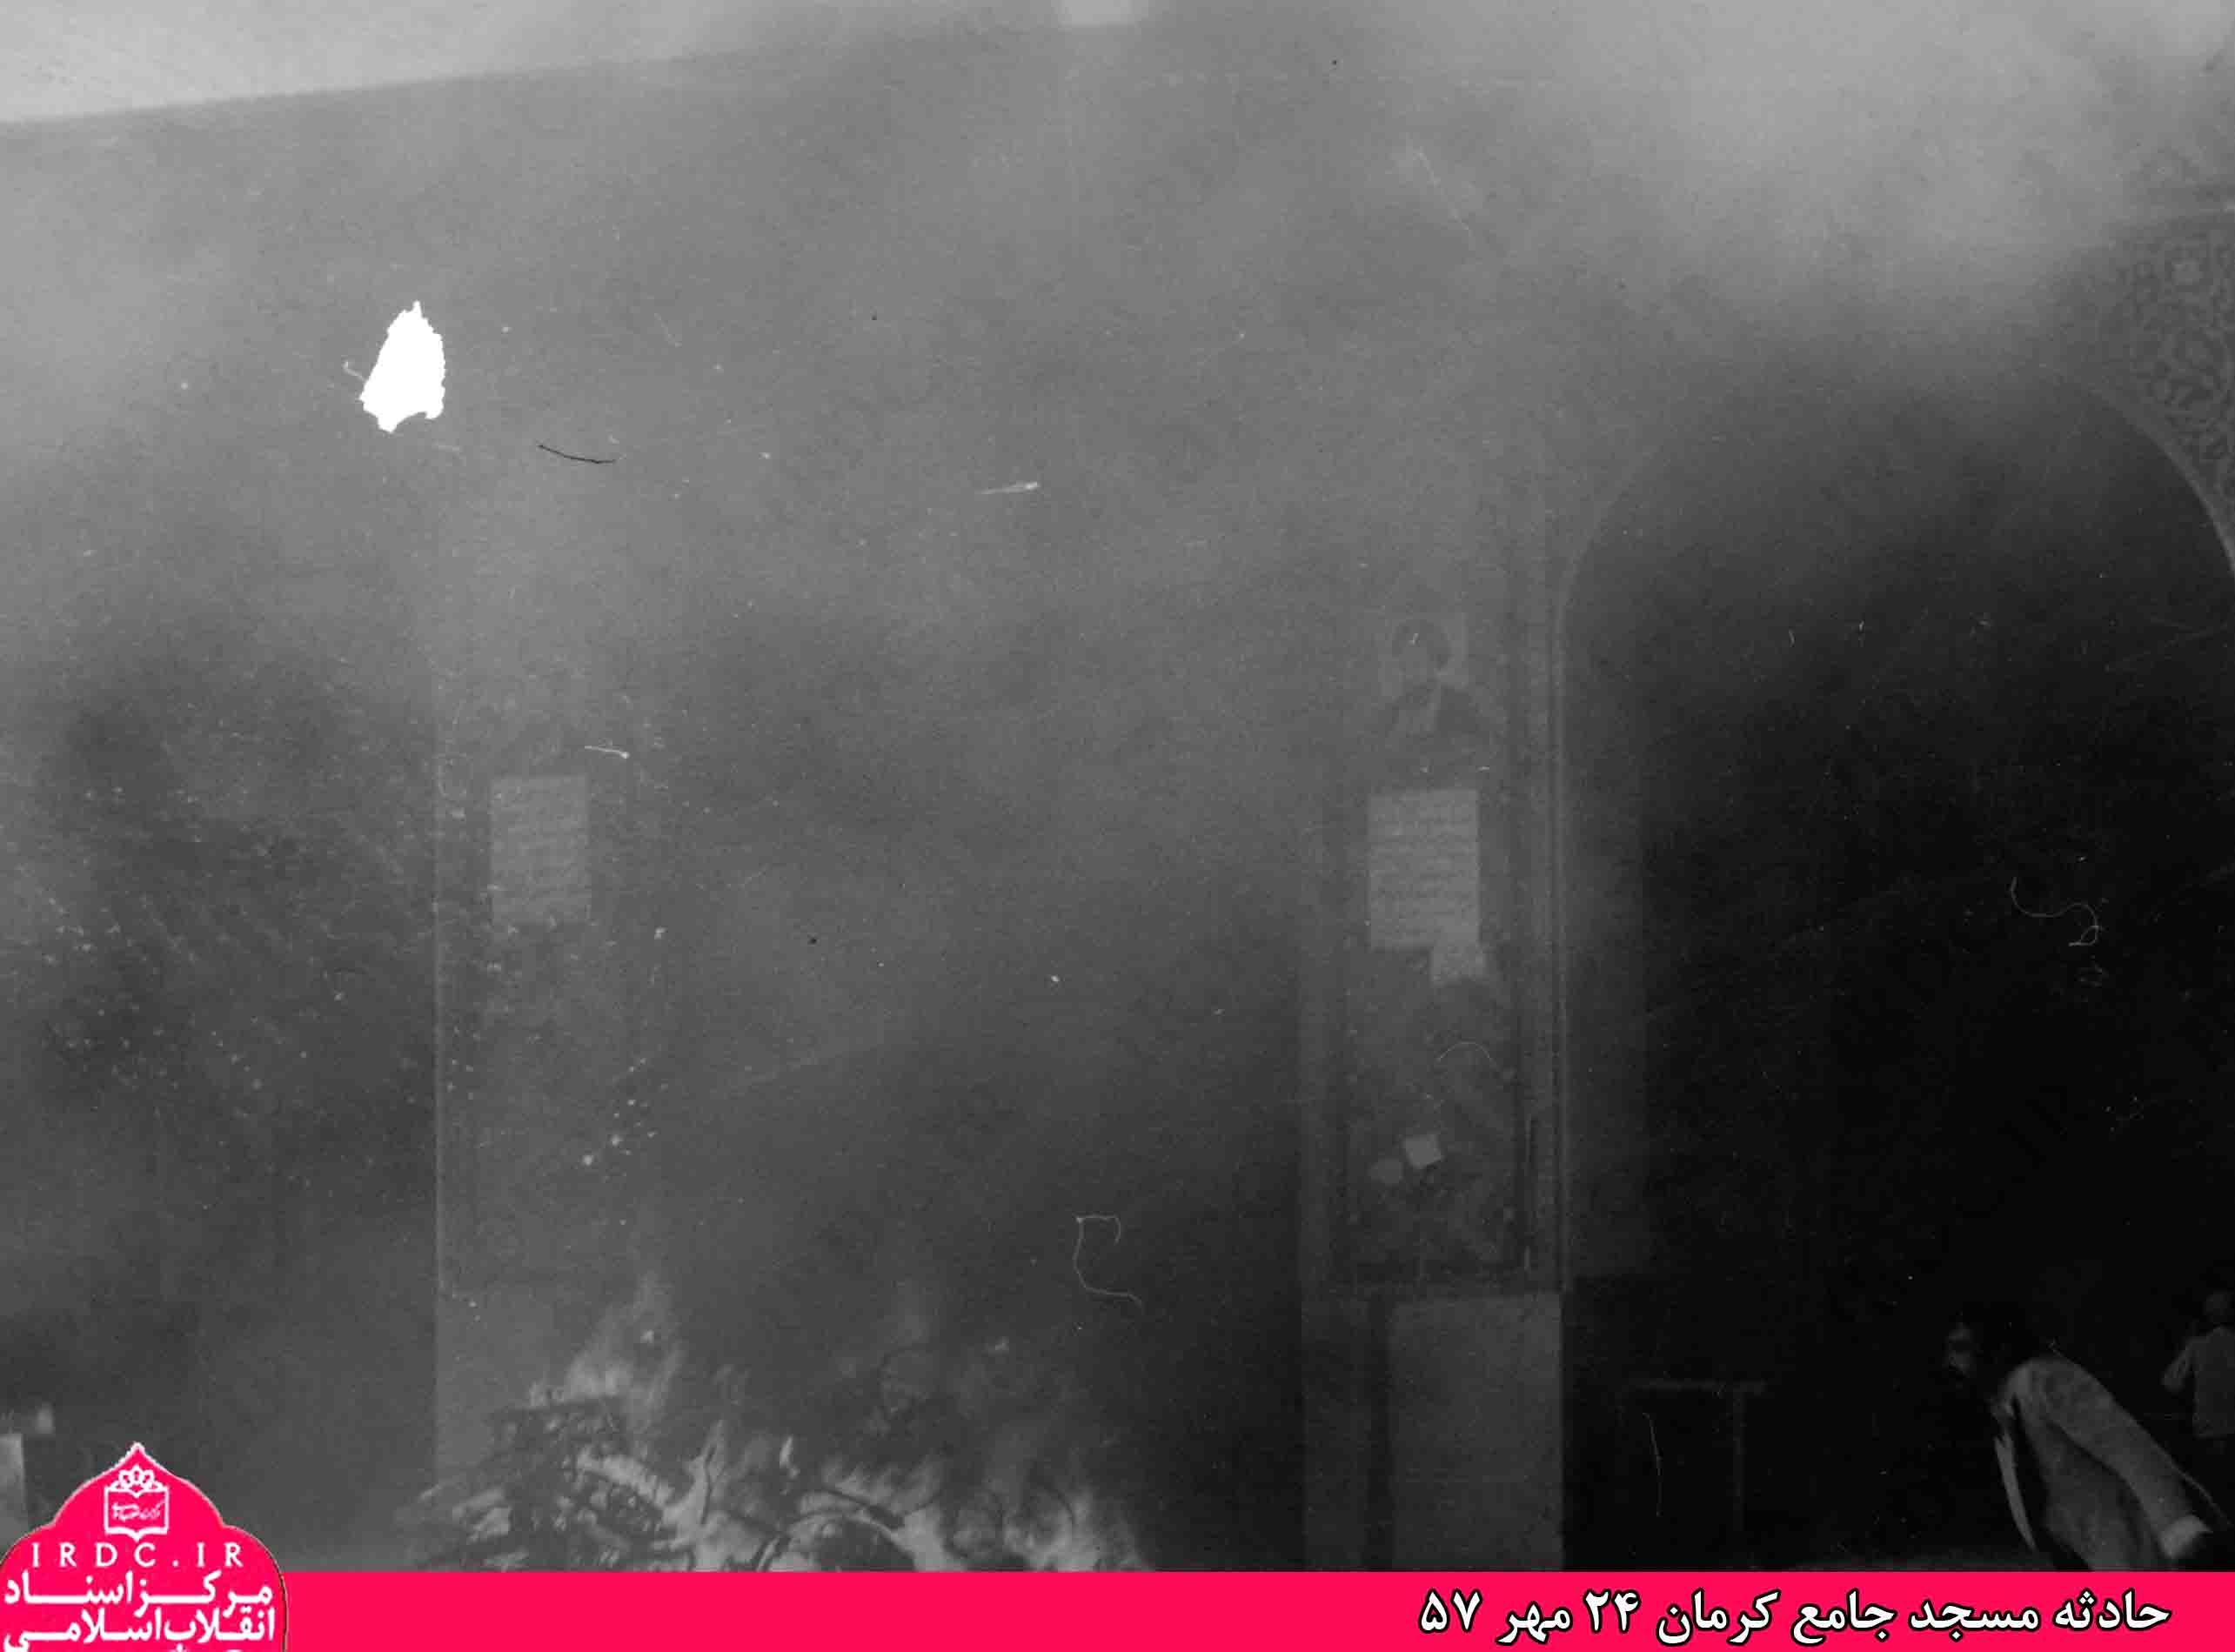 تصاویر کمتر دیده شده از حادثه مسجد جامع کرمان در 24 مهر 1357